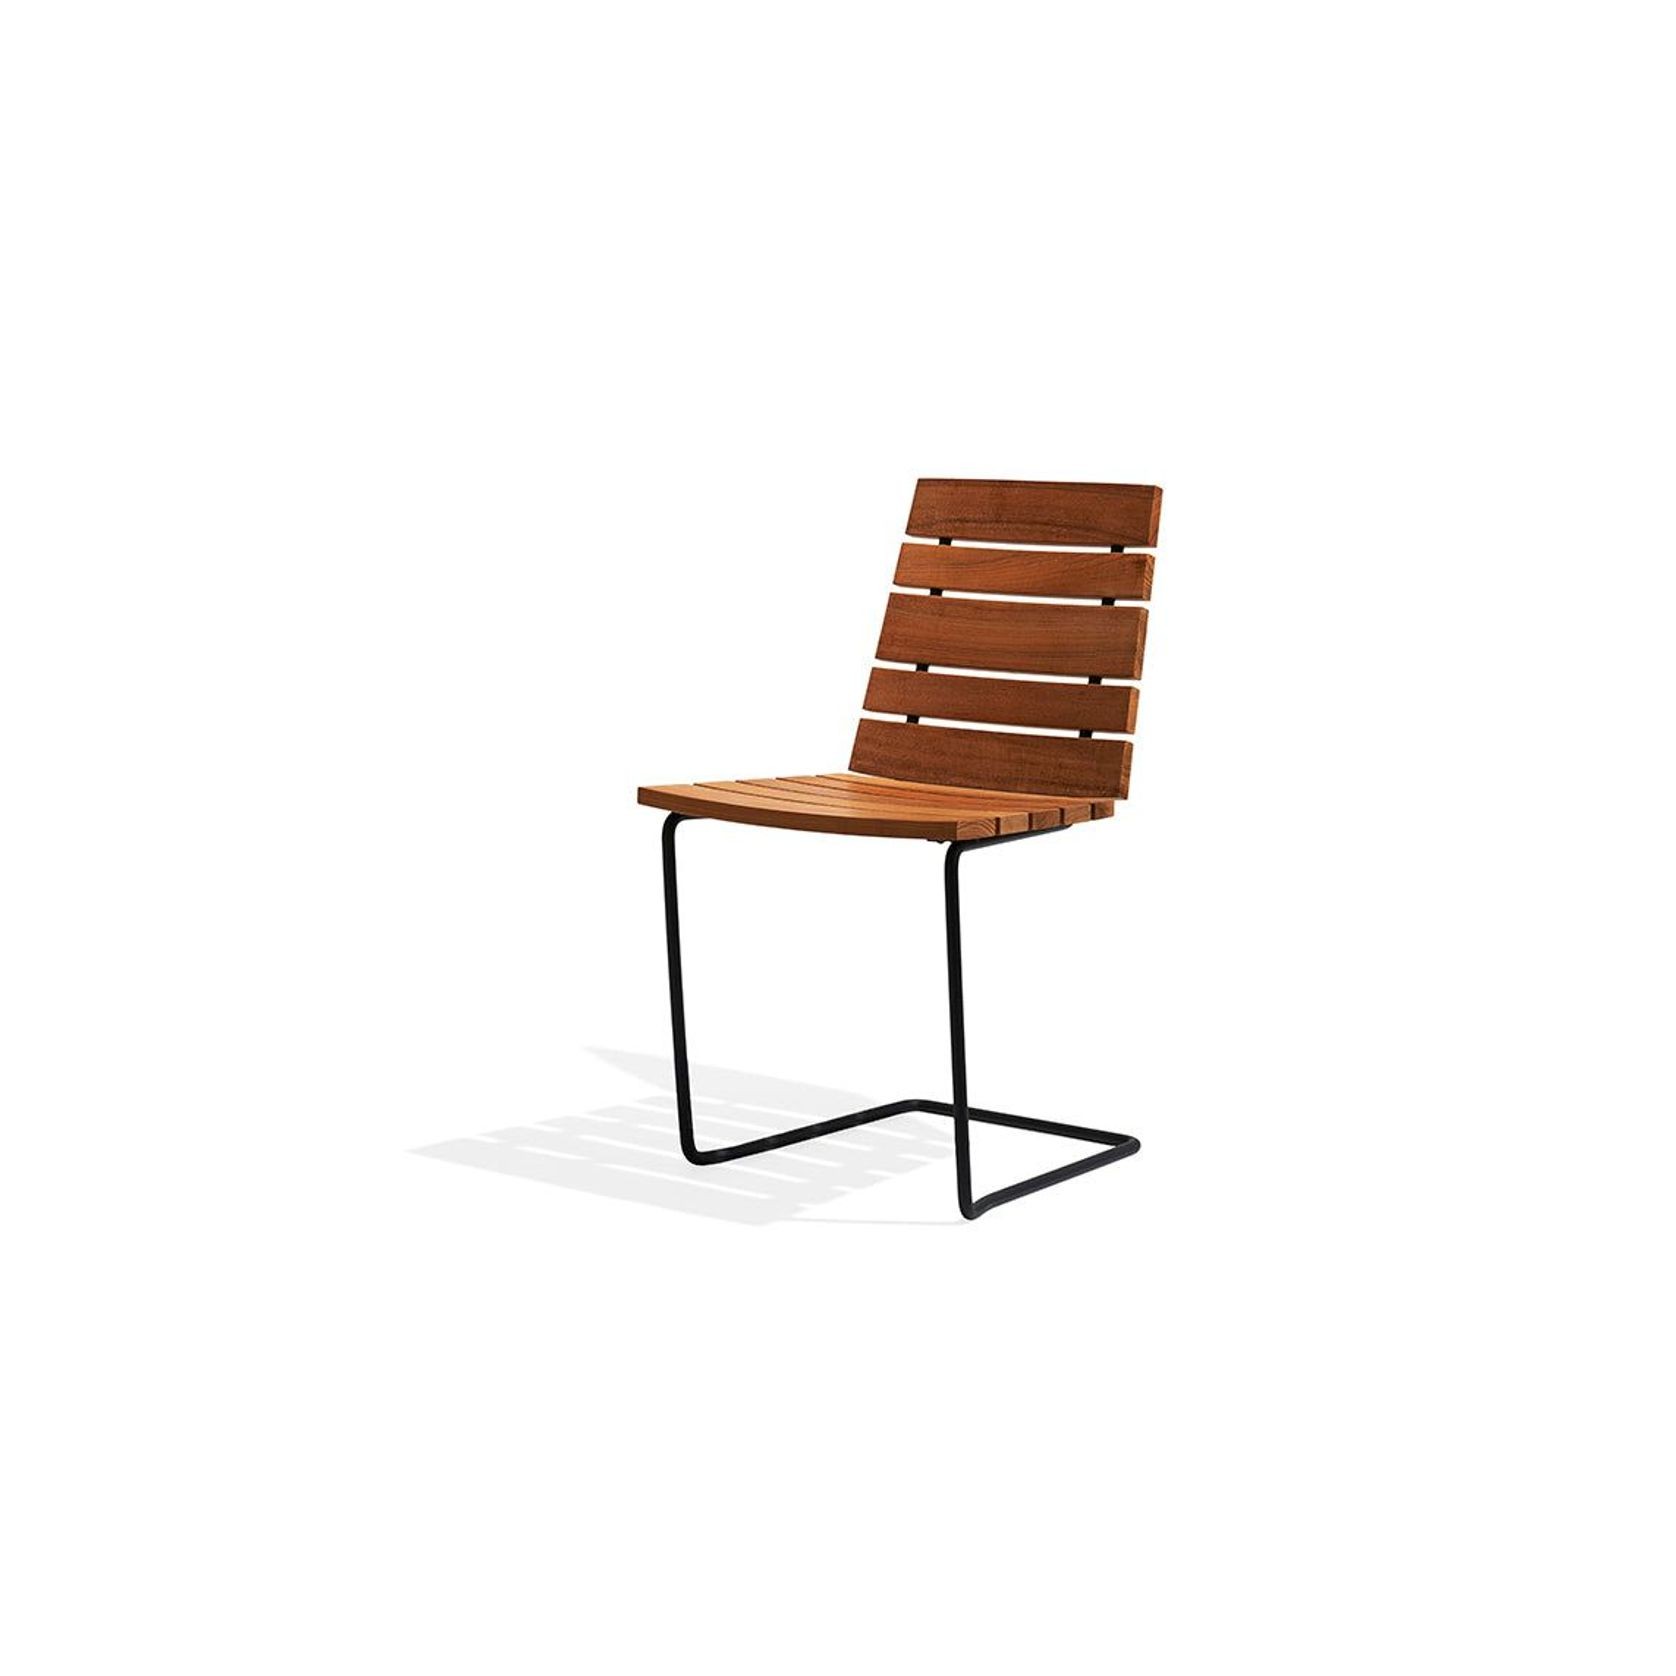 Grinda chair by Skargaarden gallery detail image